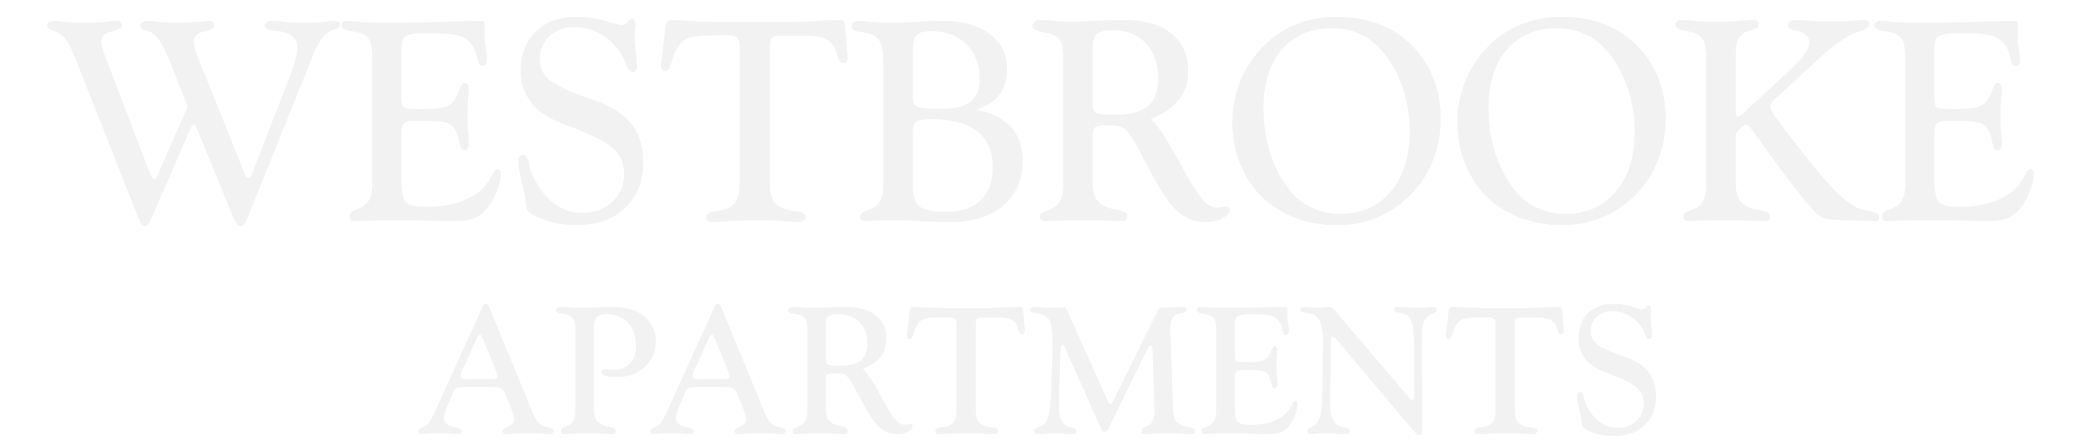 Westbrooke Apartments Logo